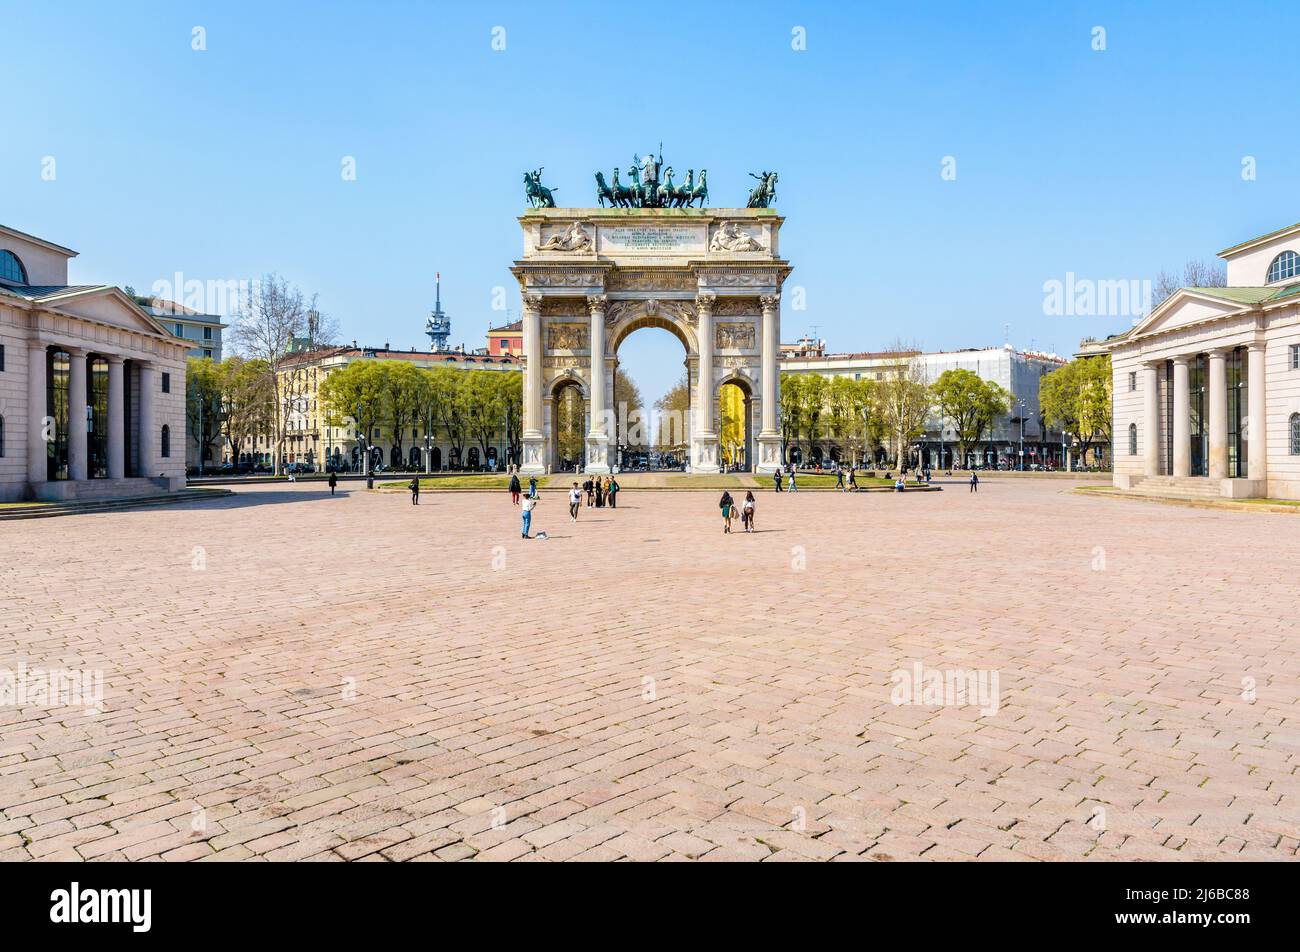 Vista general del Arco della Pace, un arco triunfal neoclásico situado en Porta Sempione (Simplon Gate) en Milán, Italia. Foto de stock